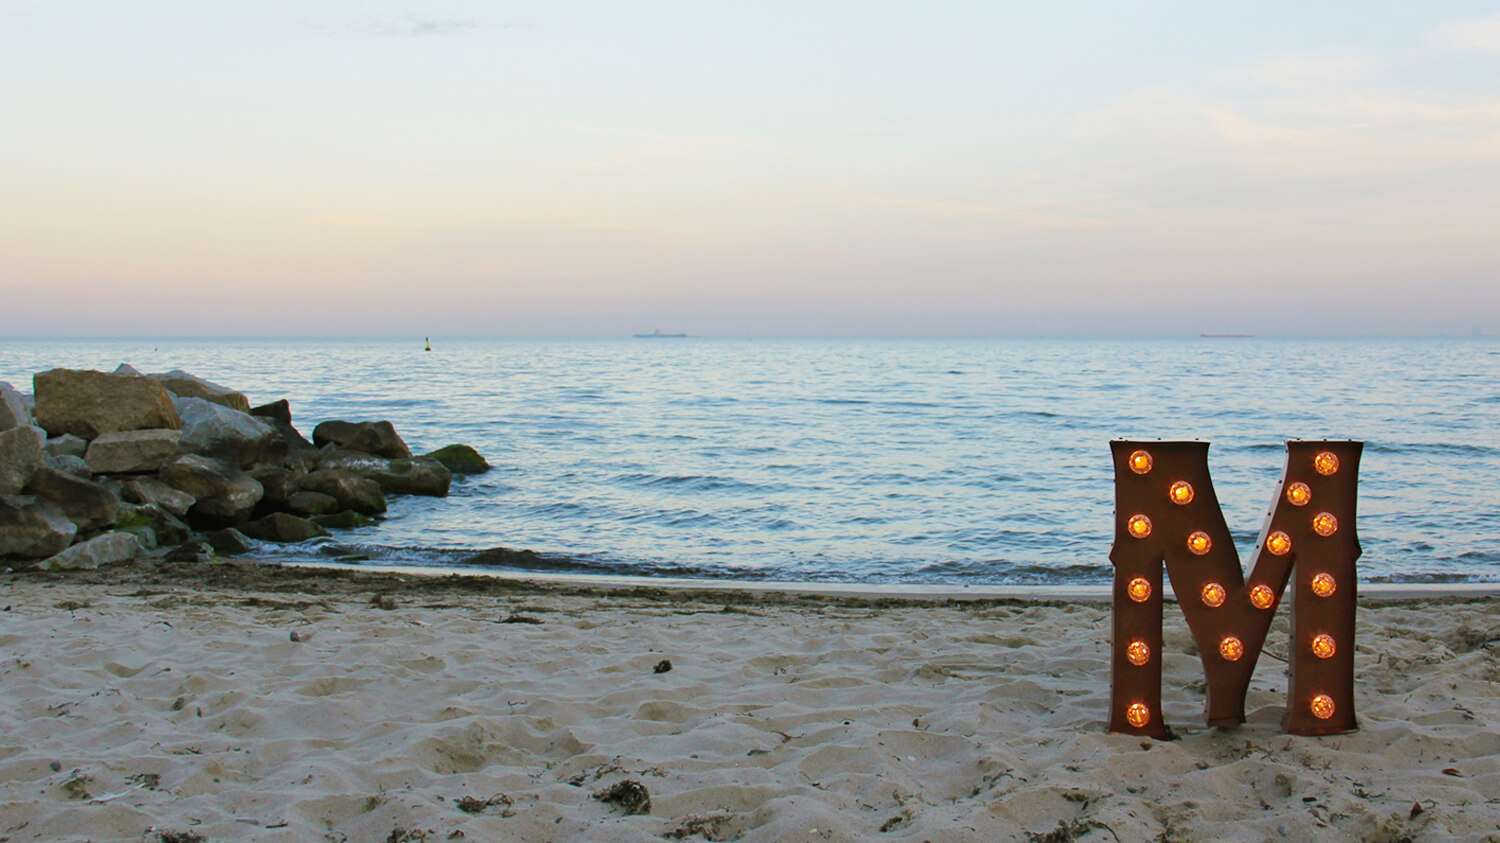 lettere con lampadine - Lettere spaziali in piedi con lampadine su una spiaggia